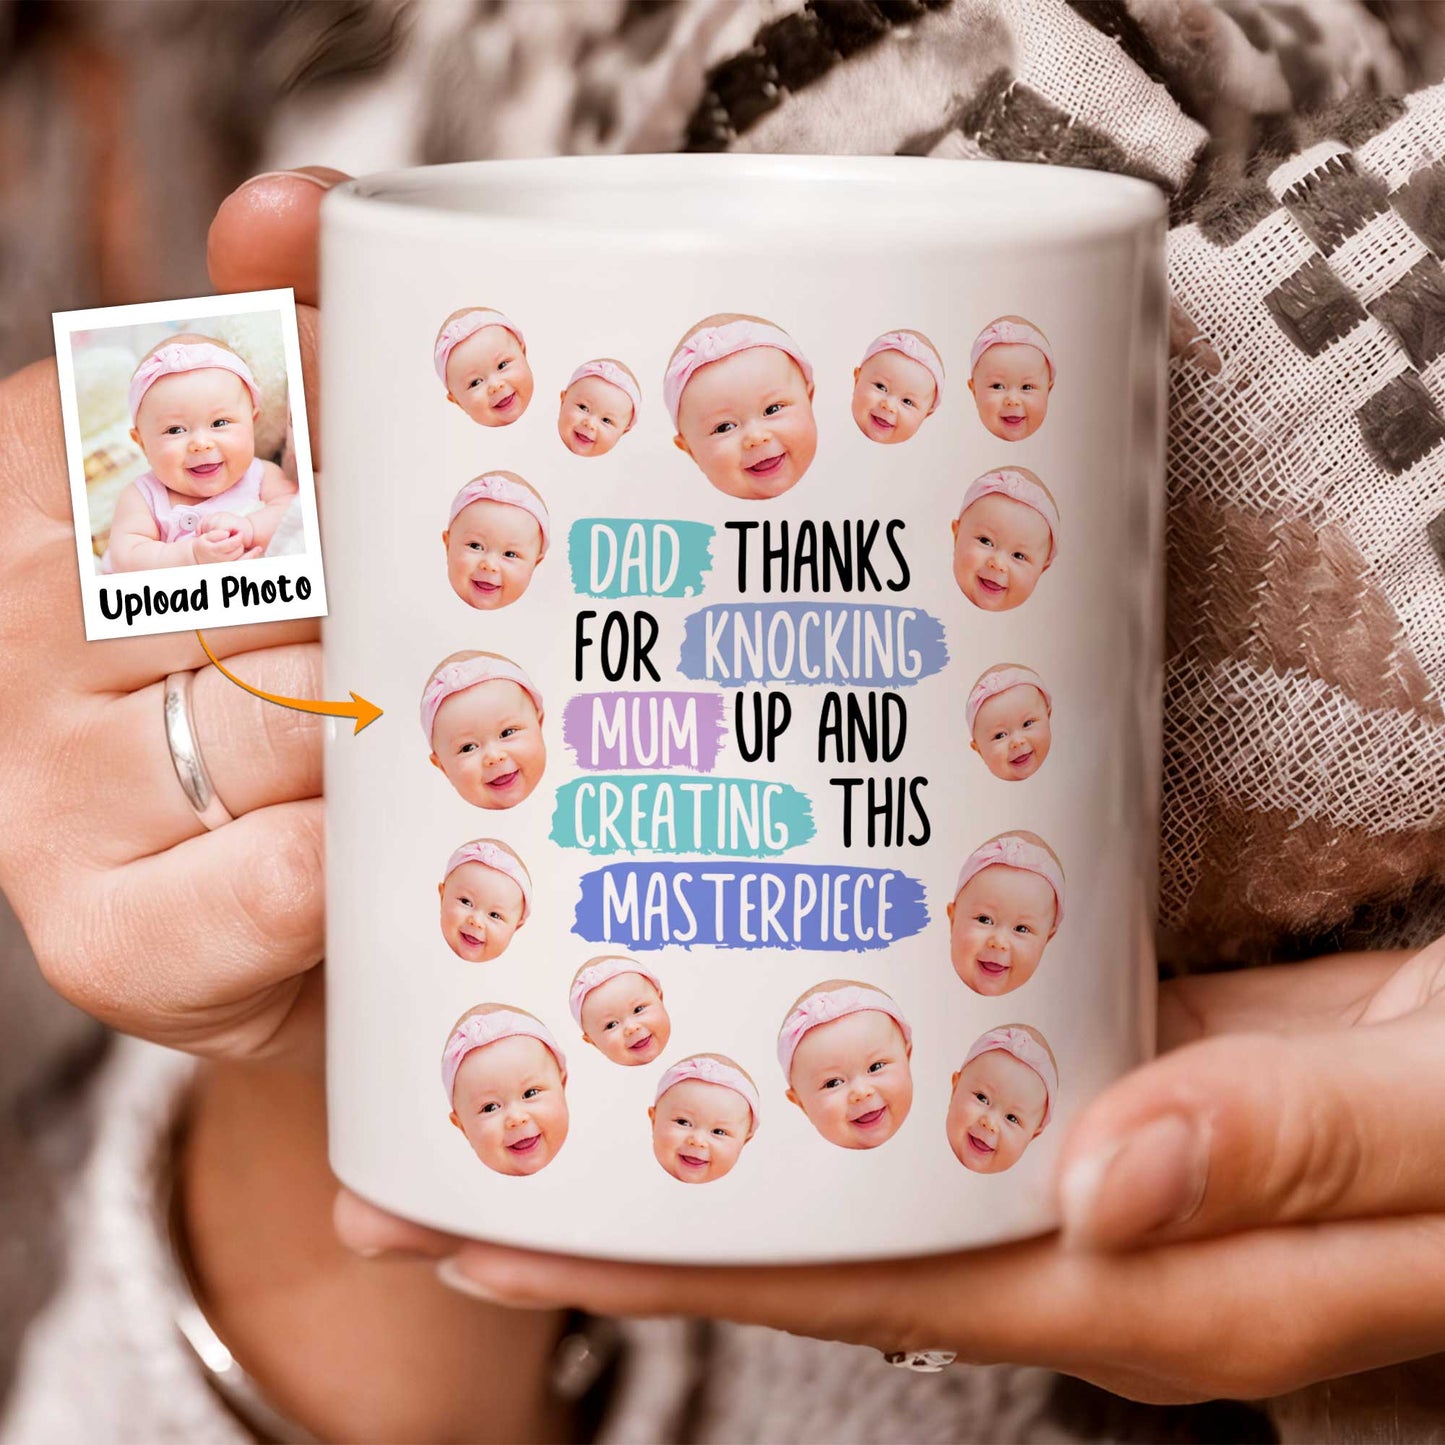 Thanks For Knocking Mum Up - Personalized Photo Mug